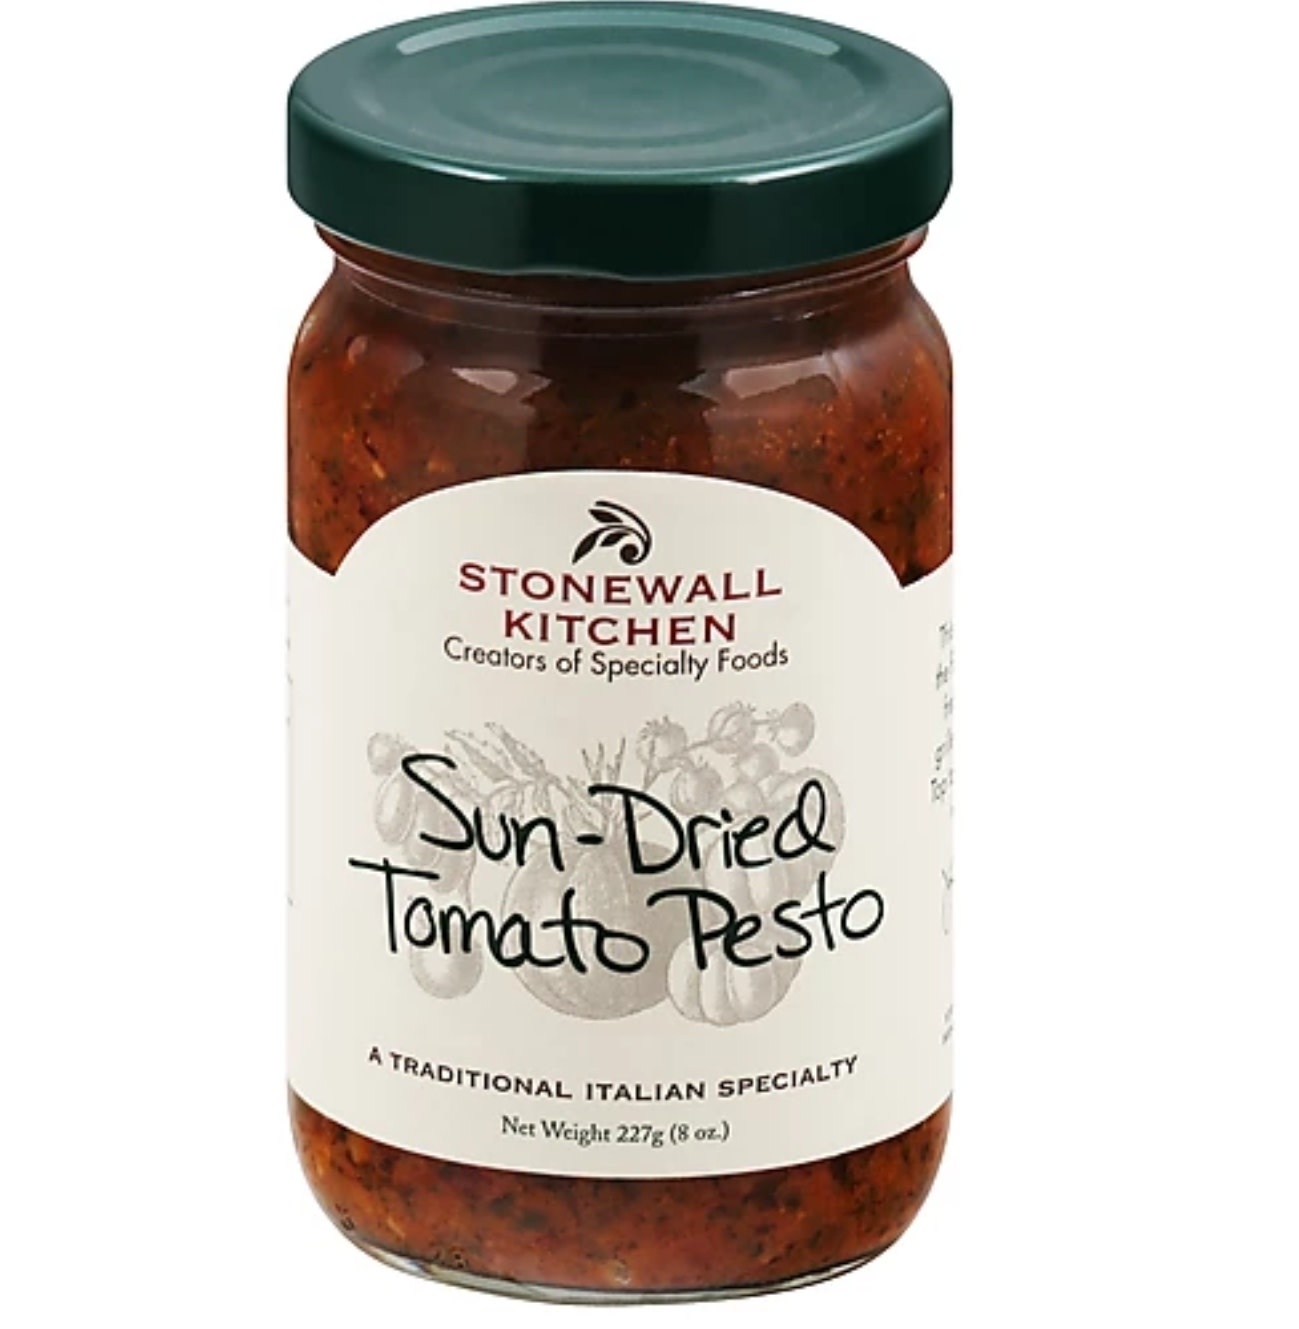 Stonewall Kitchen Sun-Dried Tomato Pesto, 8 oz